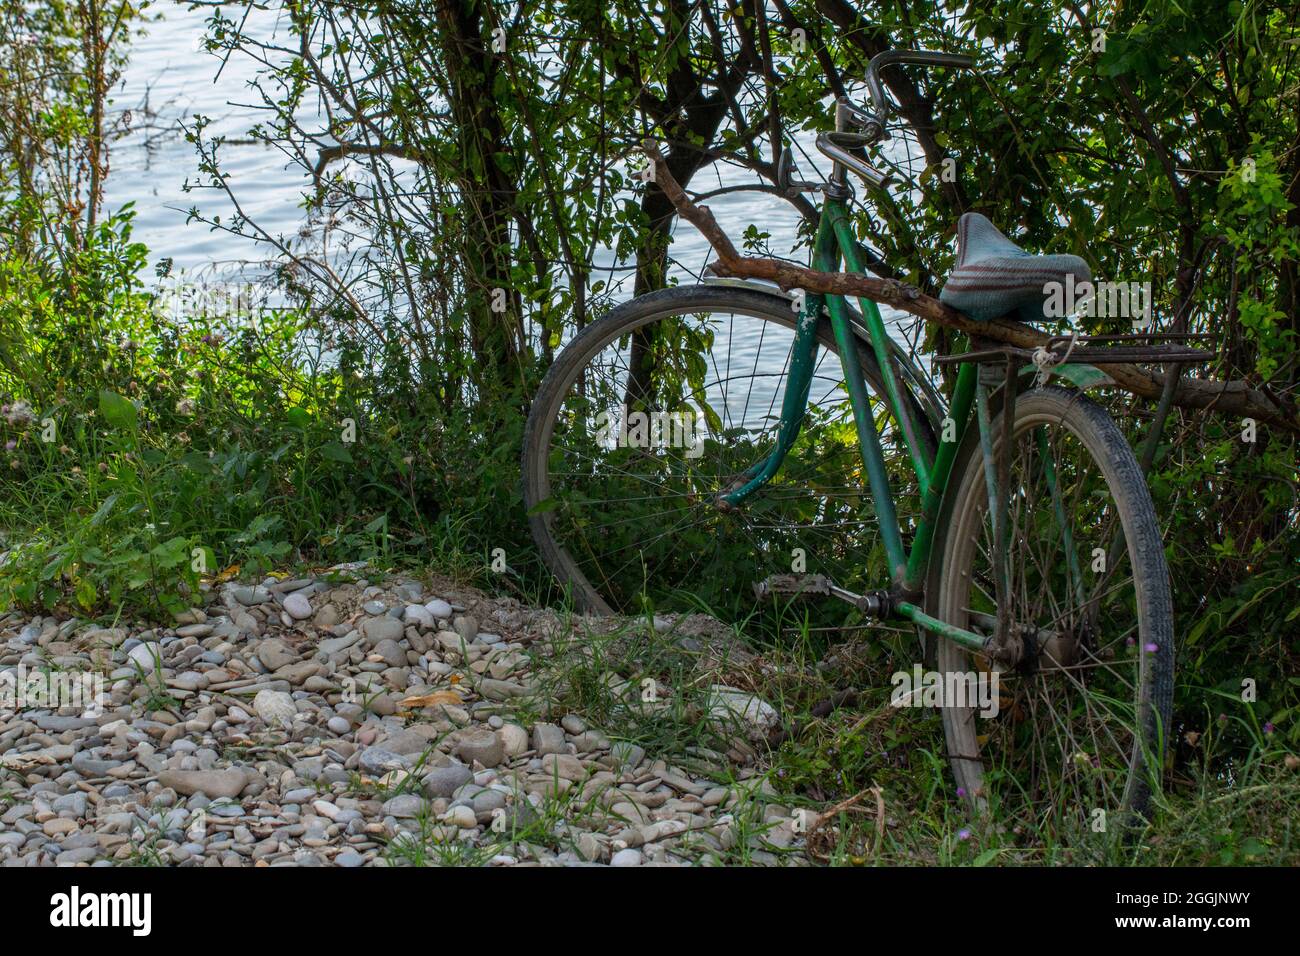 Bicicletta abbandonata vicino ad un lago. Foto Stock